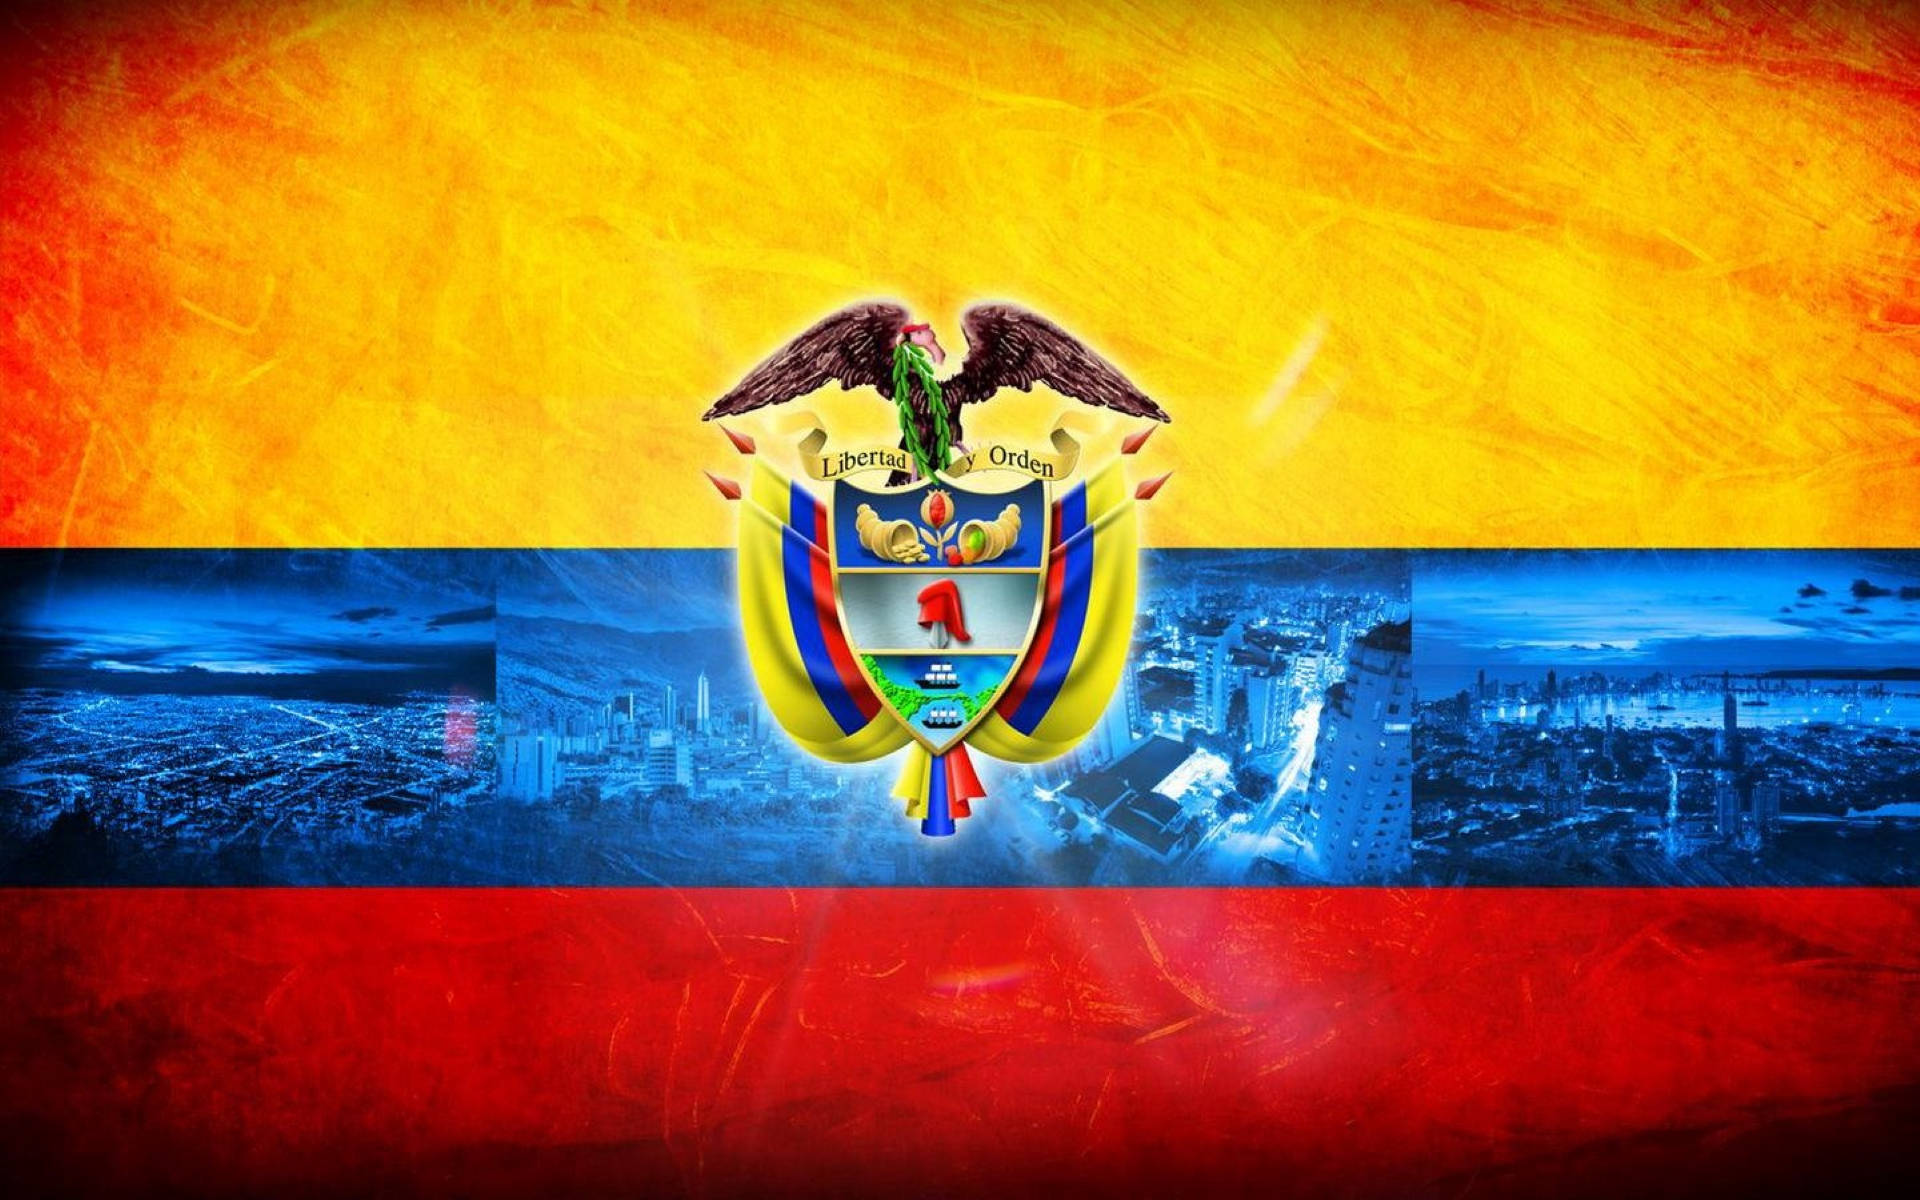 Vibrantebandera De Colombia Con Escudo De Armas Fondo de pantalla